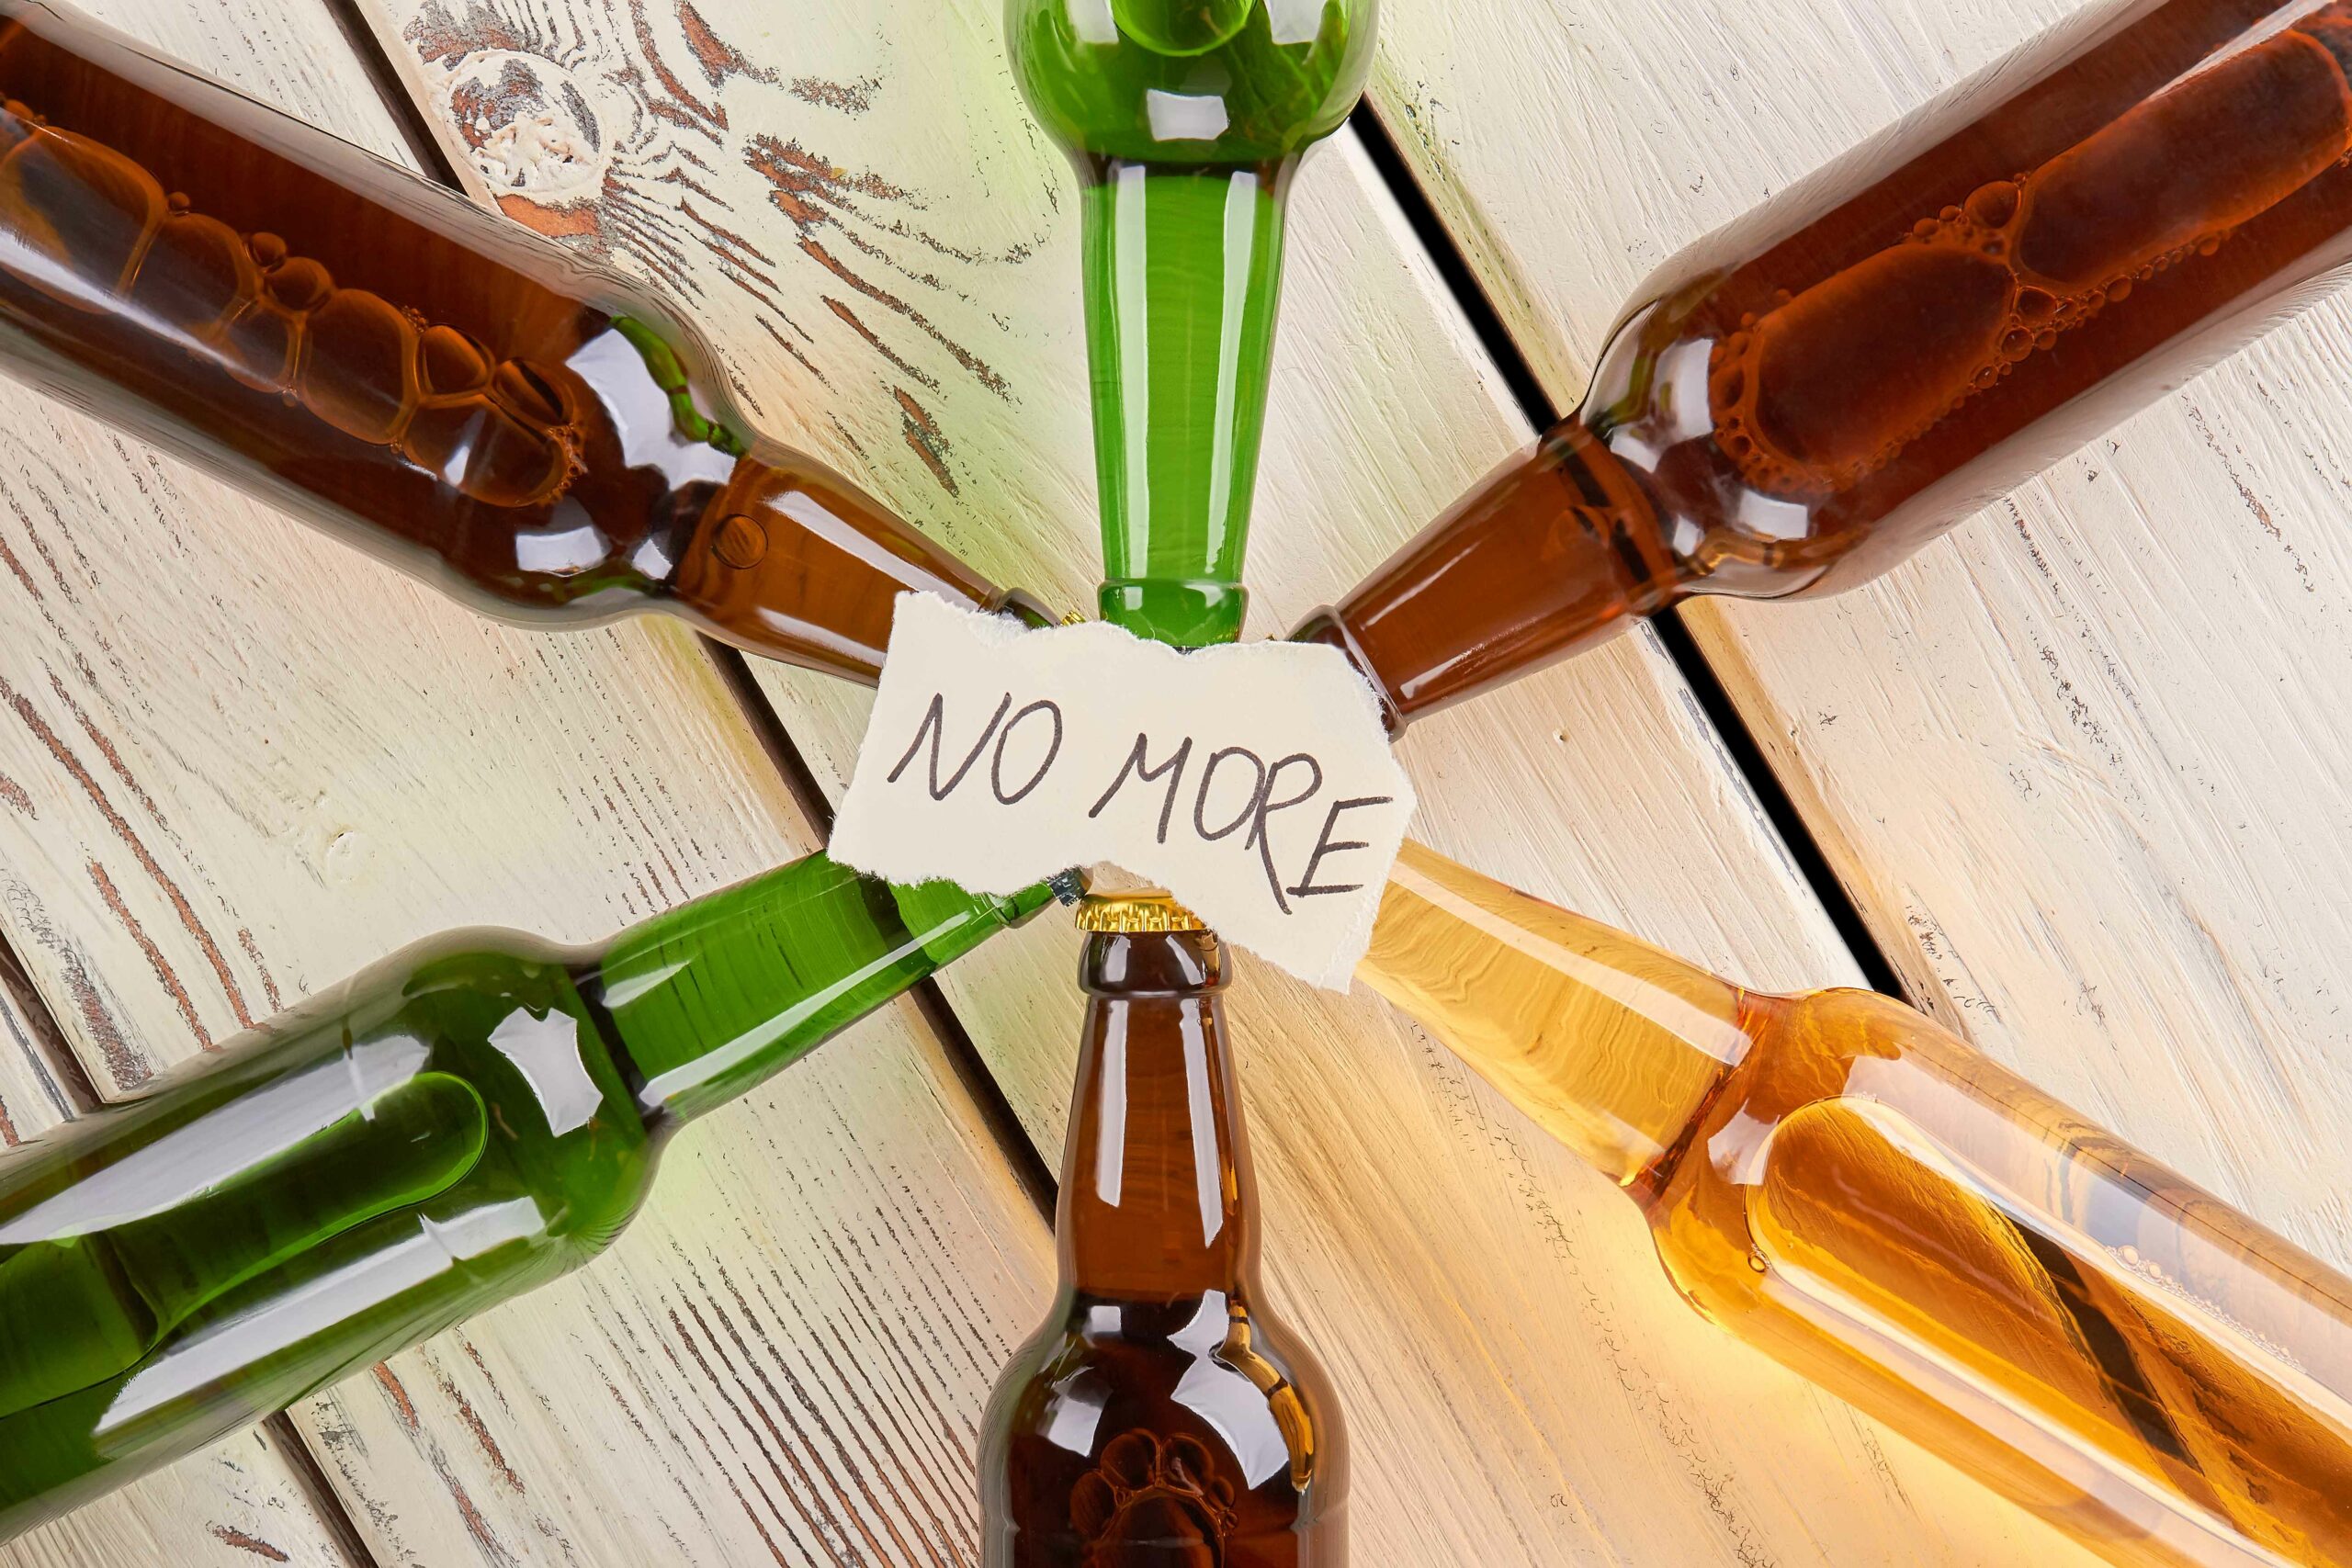 Botellas de cerveza con un letrero que dice "no more".